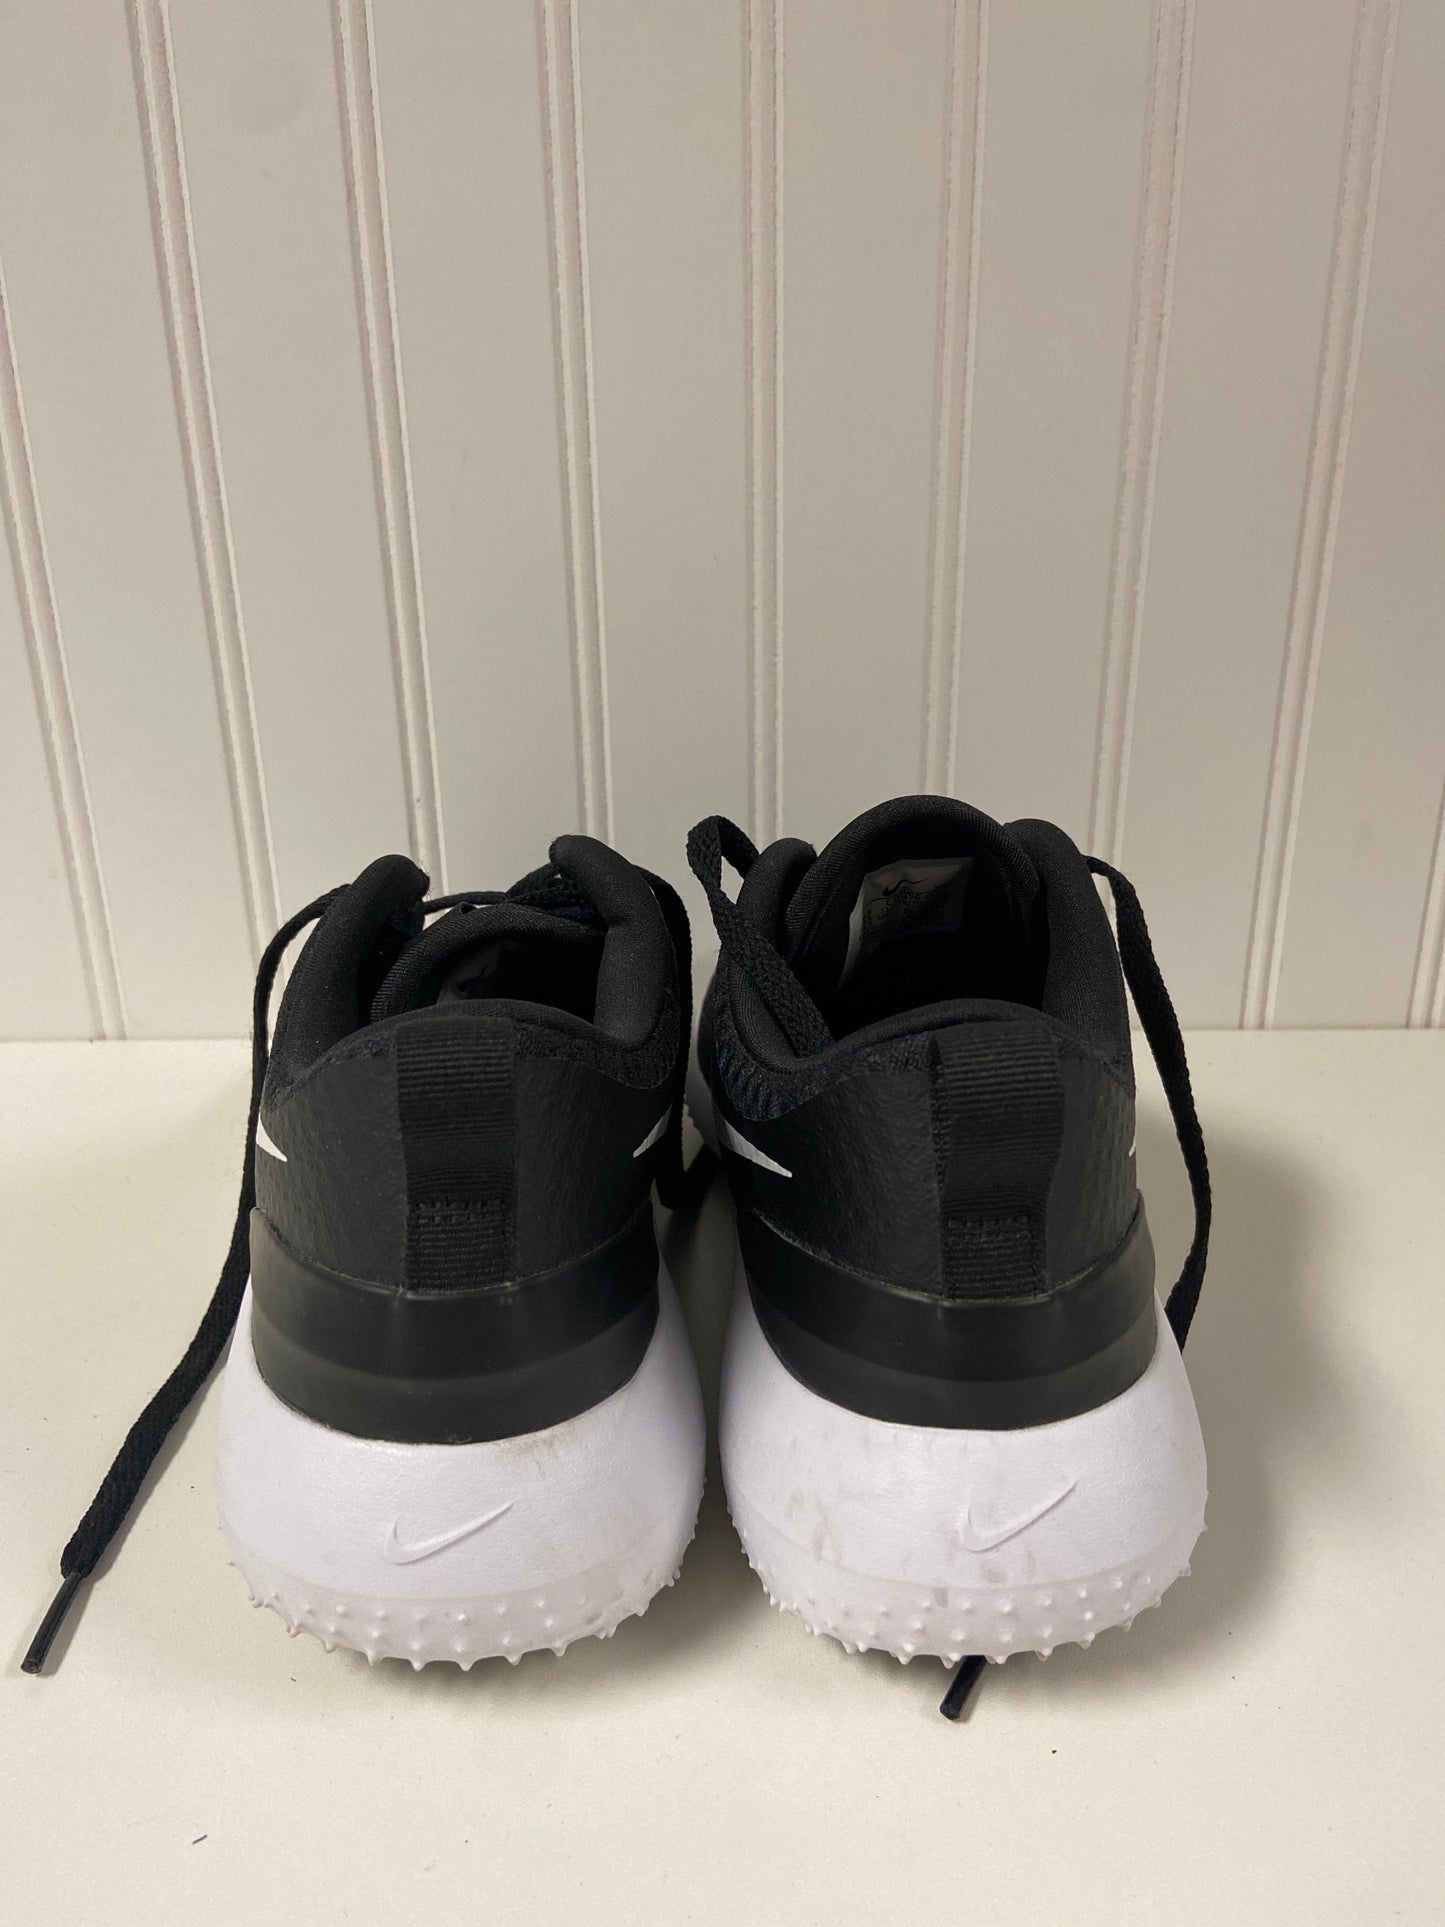 Black & White Shoes Athletic Nike, Size 6.5